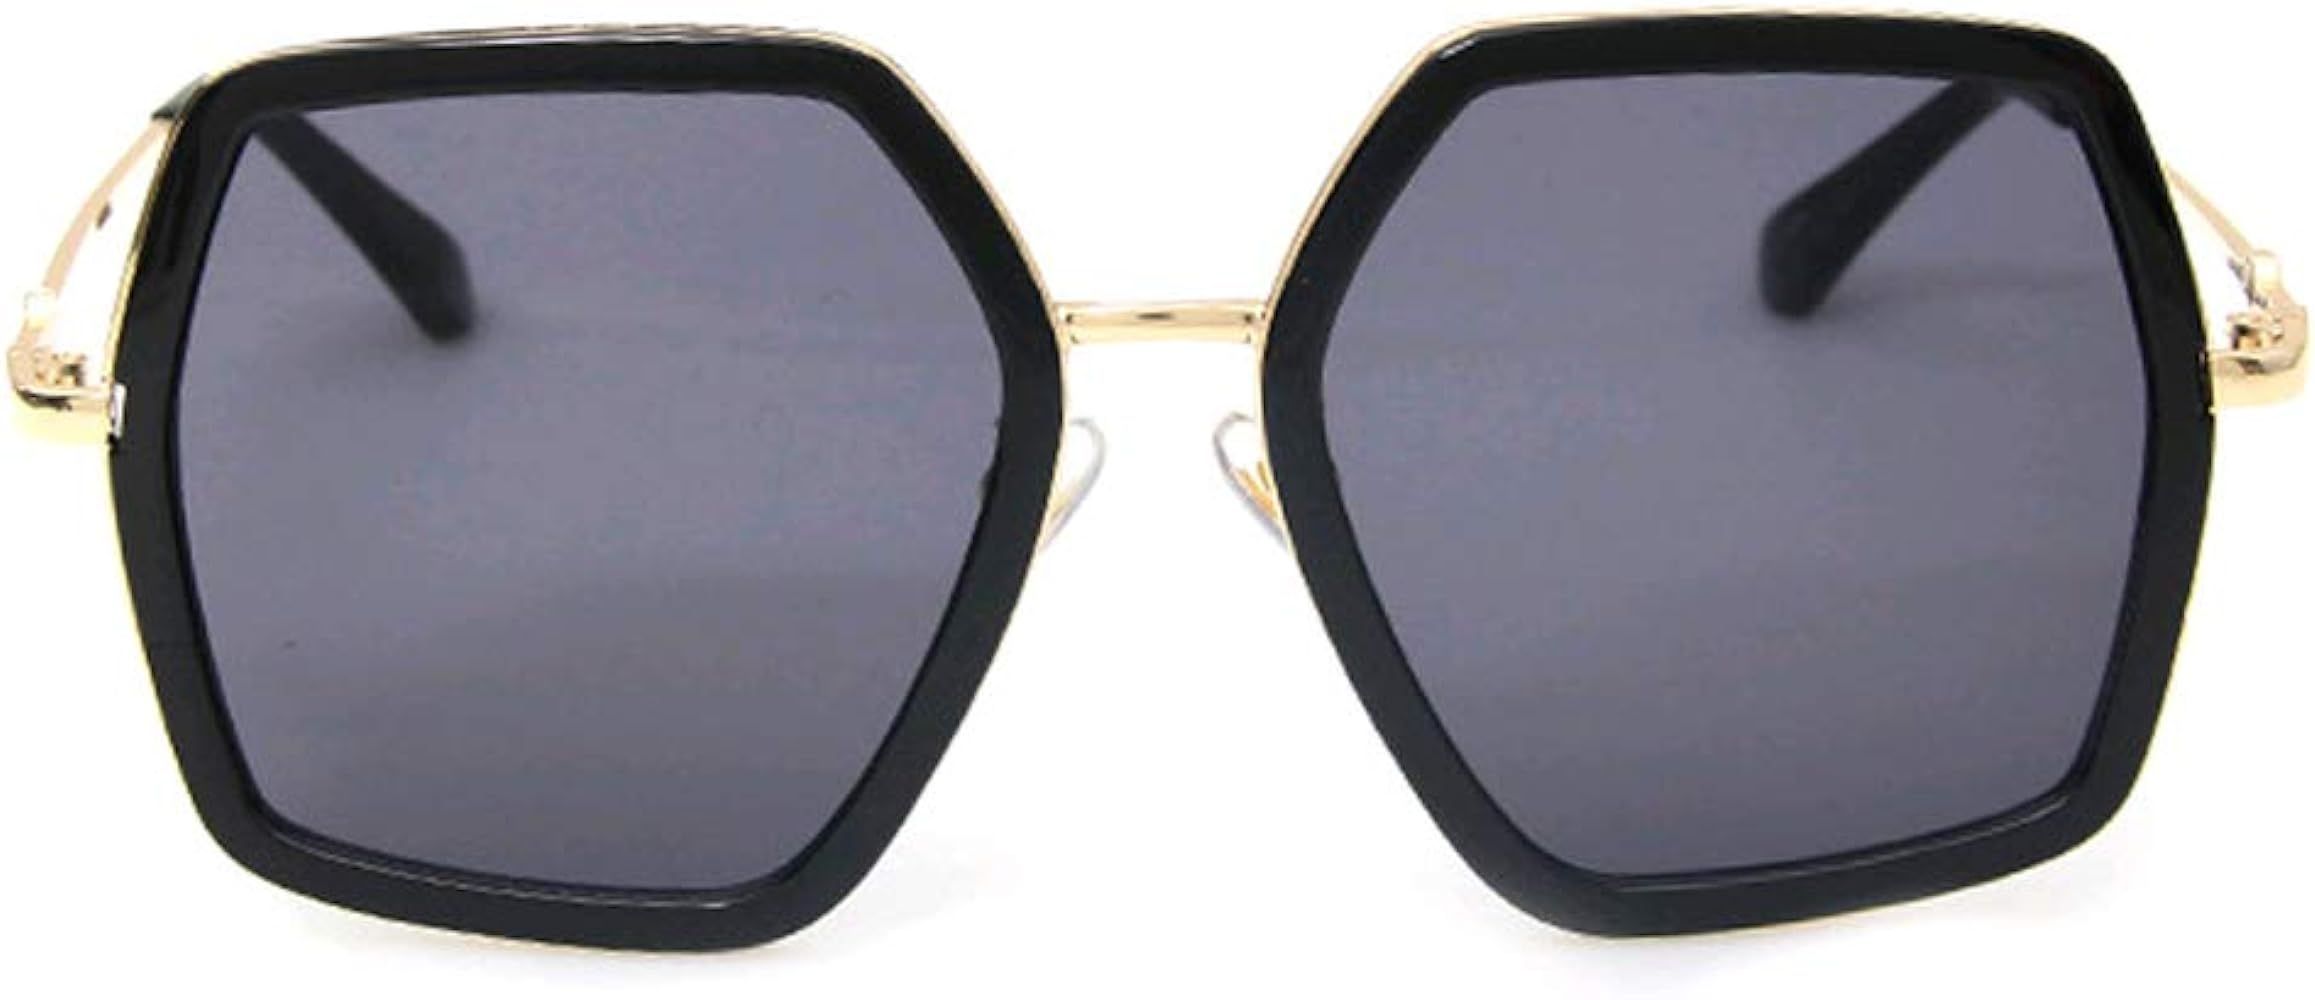 GAMT Oversized Square Sunglasses Women Vintage UV Protection Irregular Designer Shades | Amazon (US)